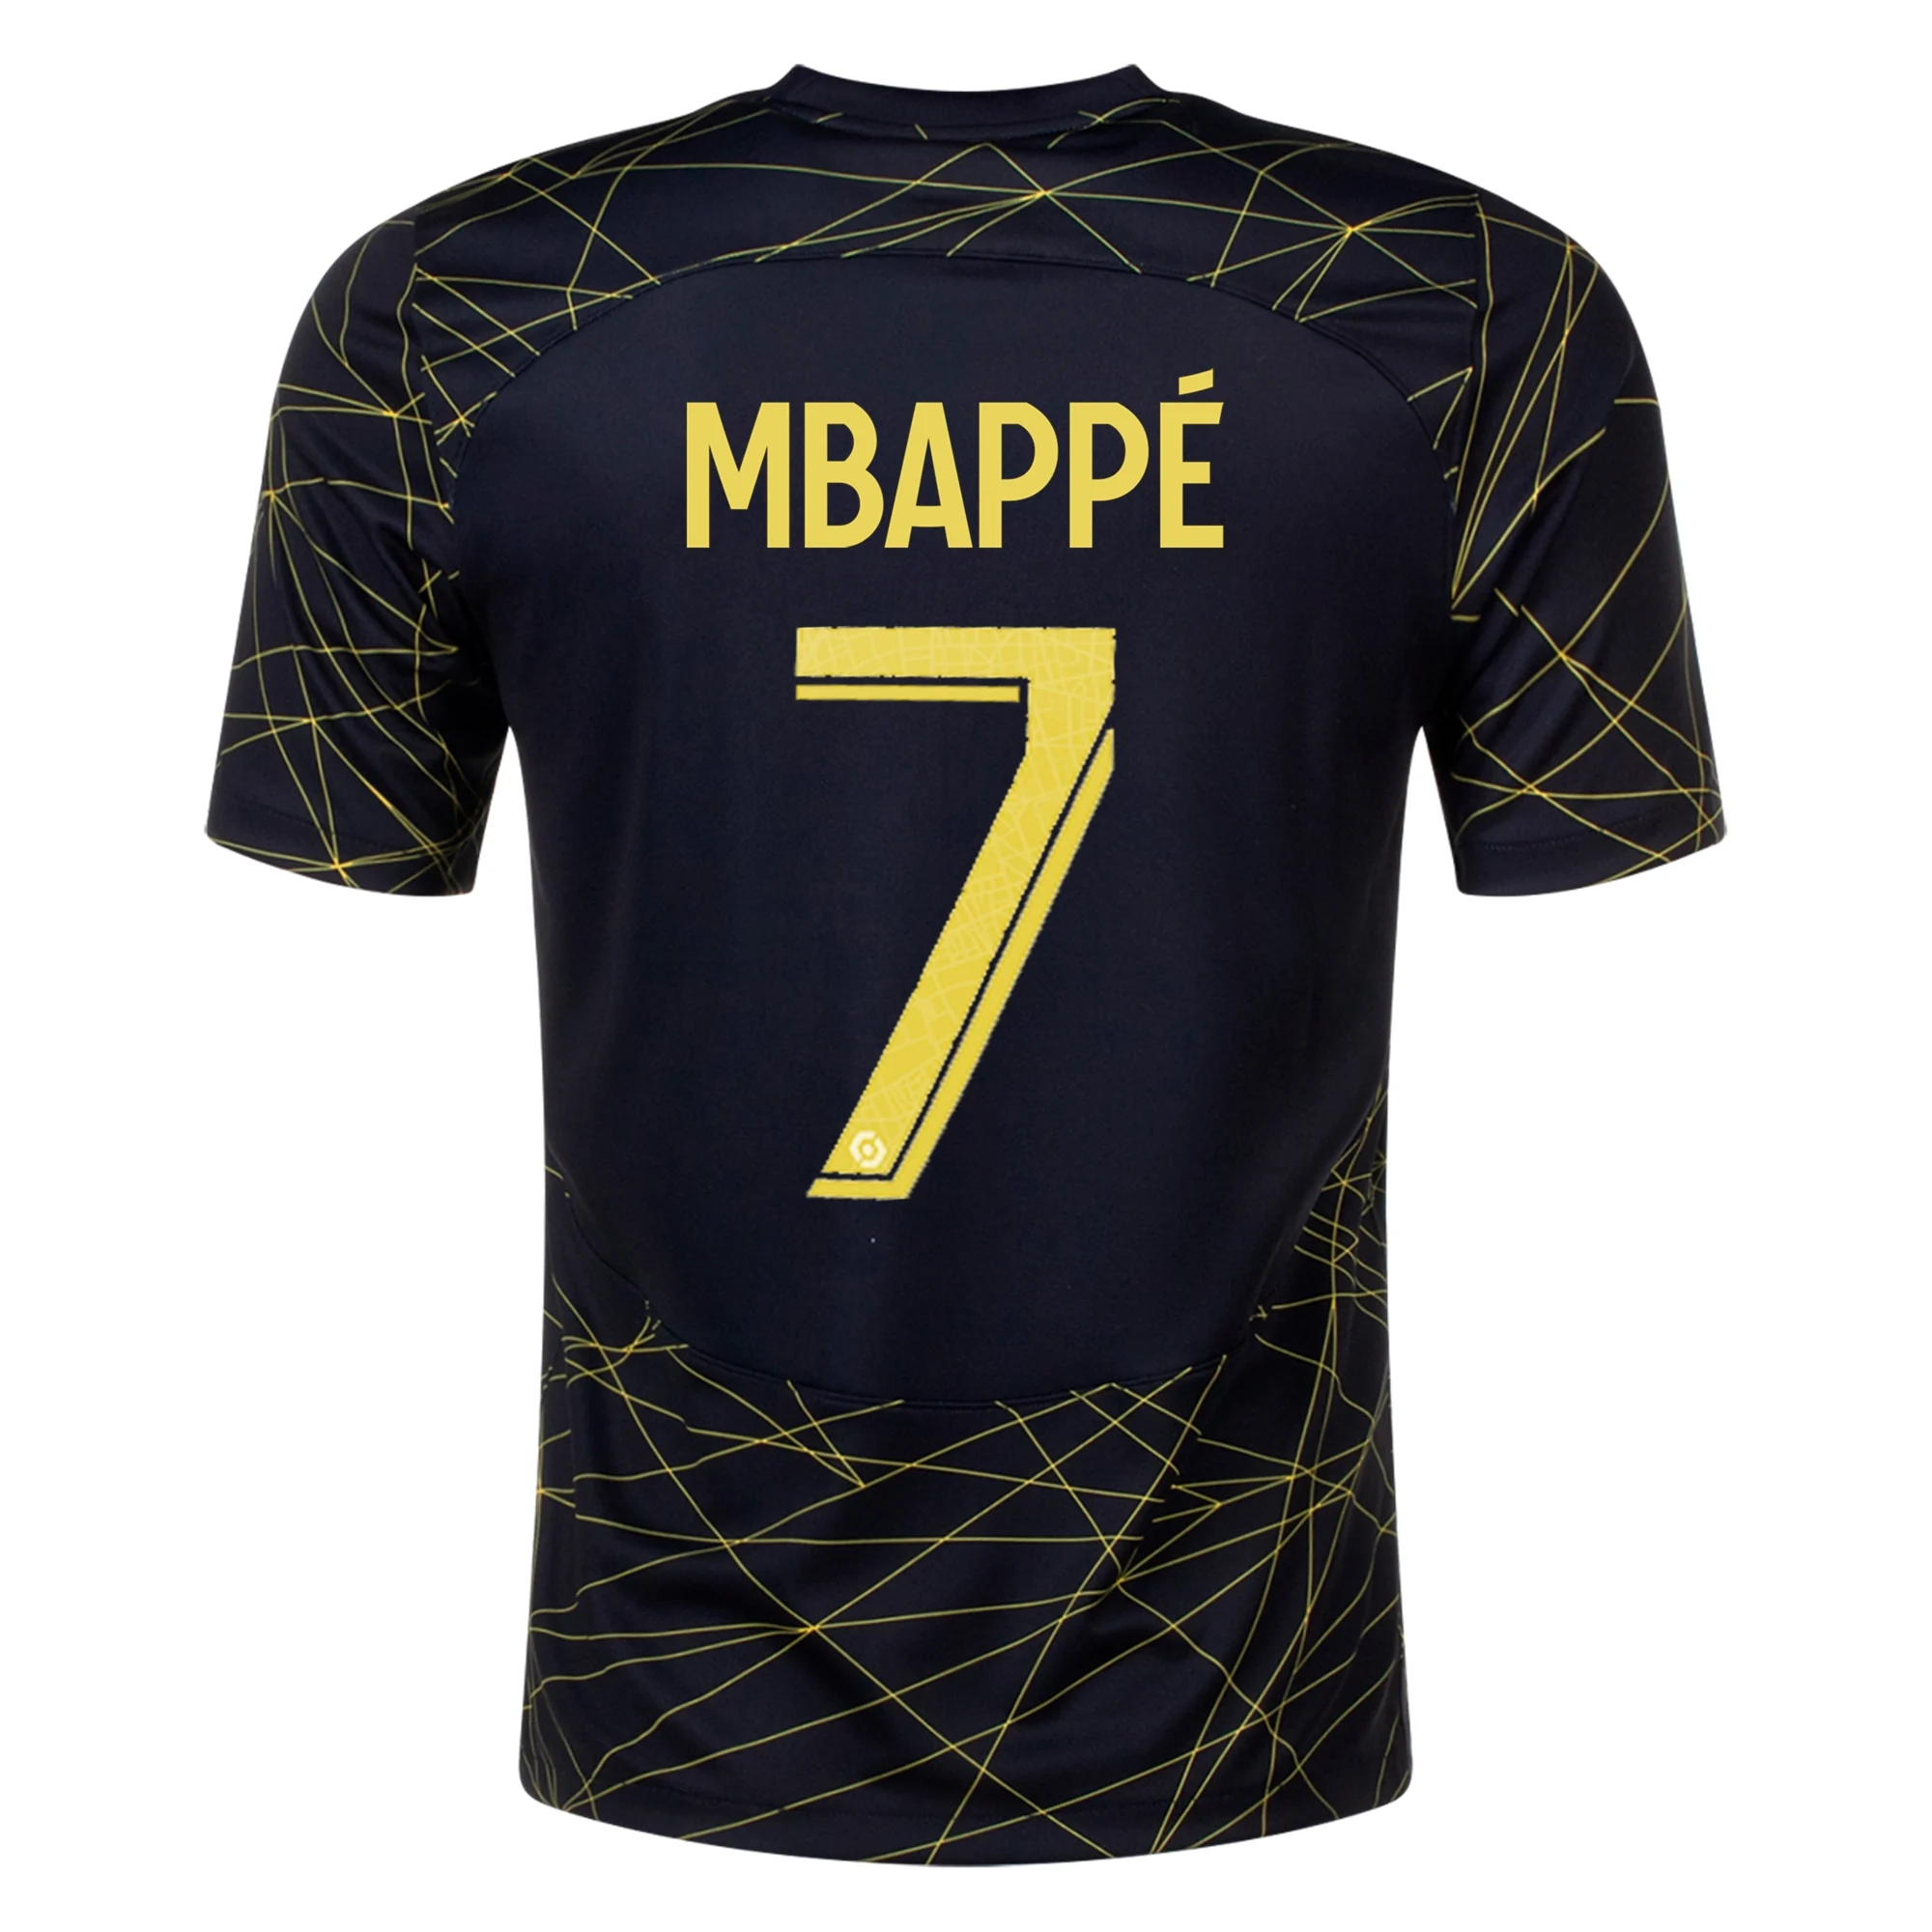 Kylian Mbappé Print Mbappé Paris SG Mbappé PSG Shirt 